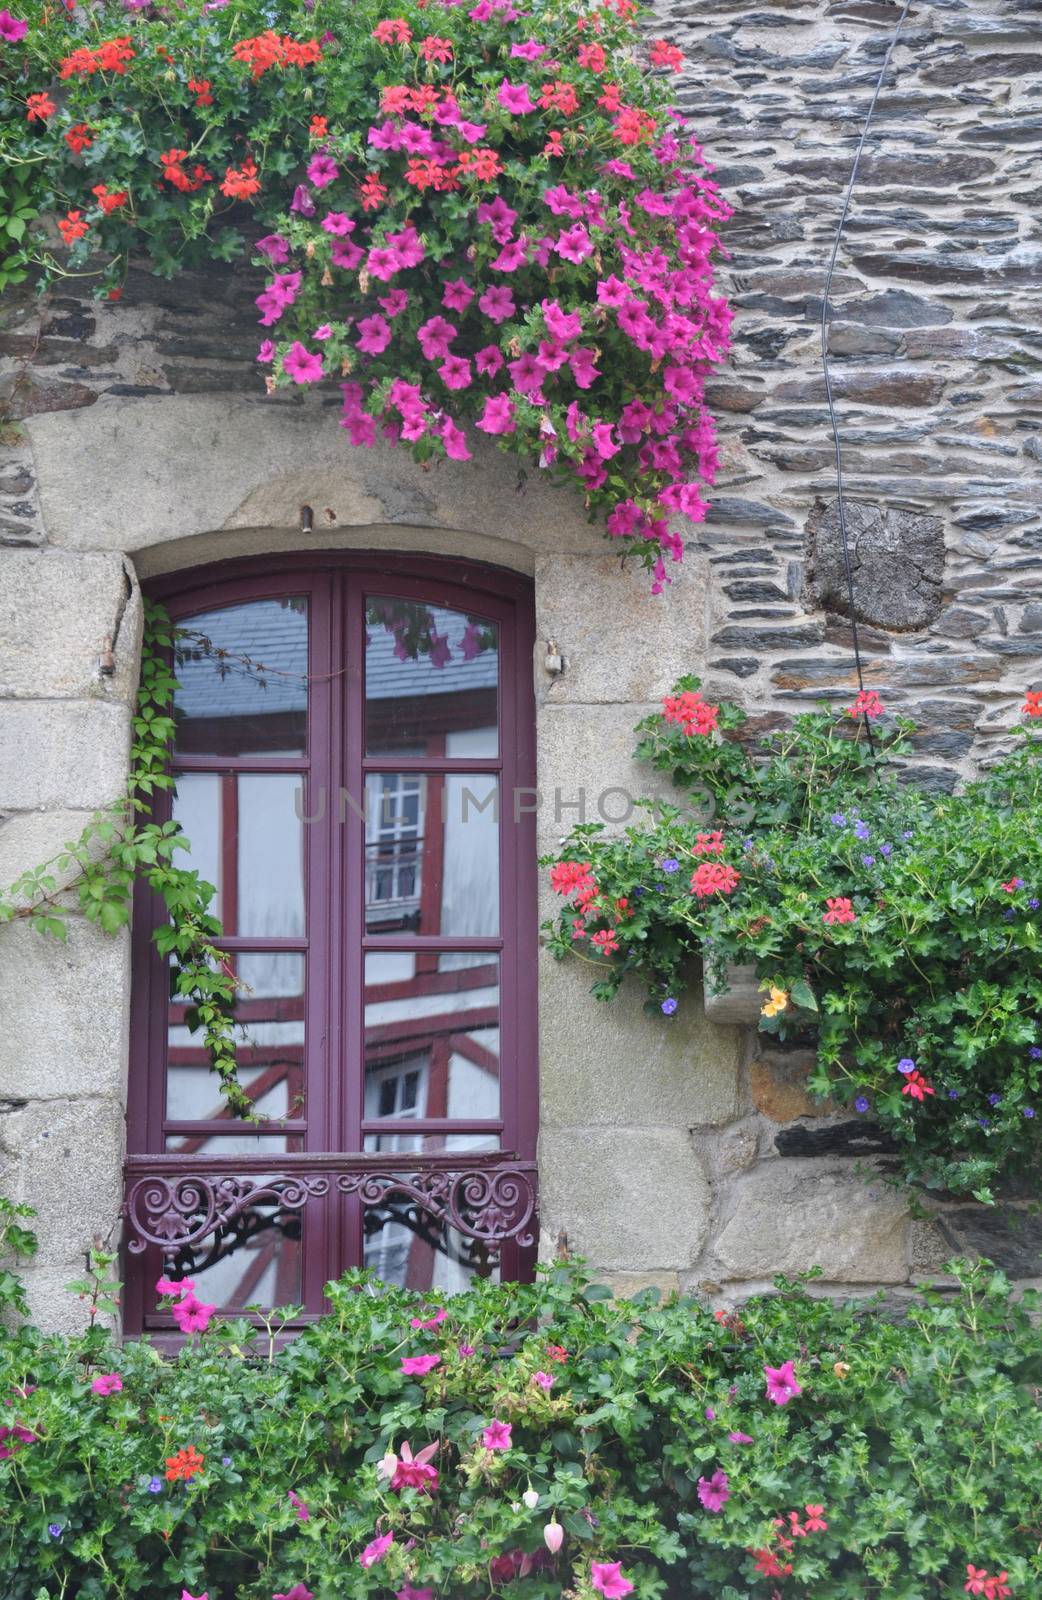 Pretty window Rochefort-en-Terre, France. by dpe123